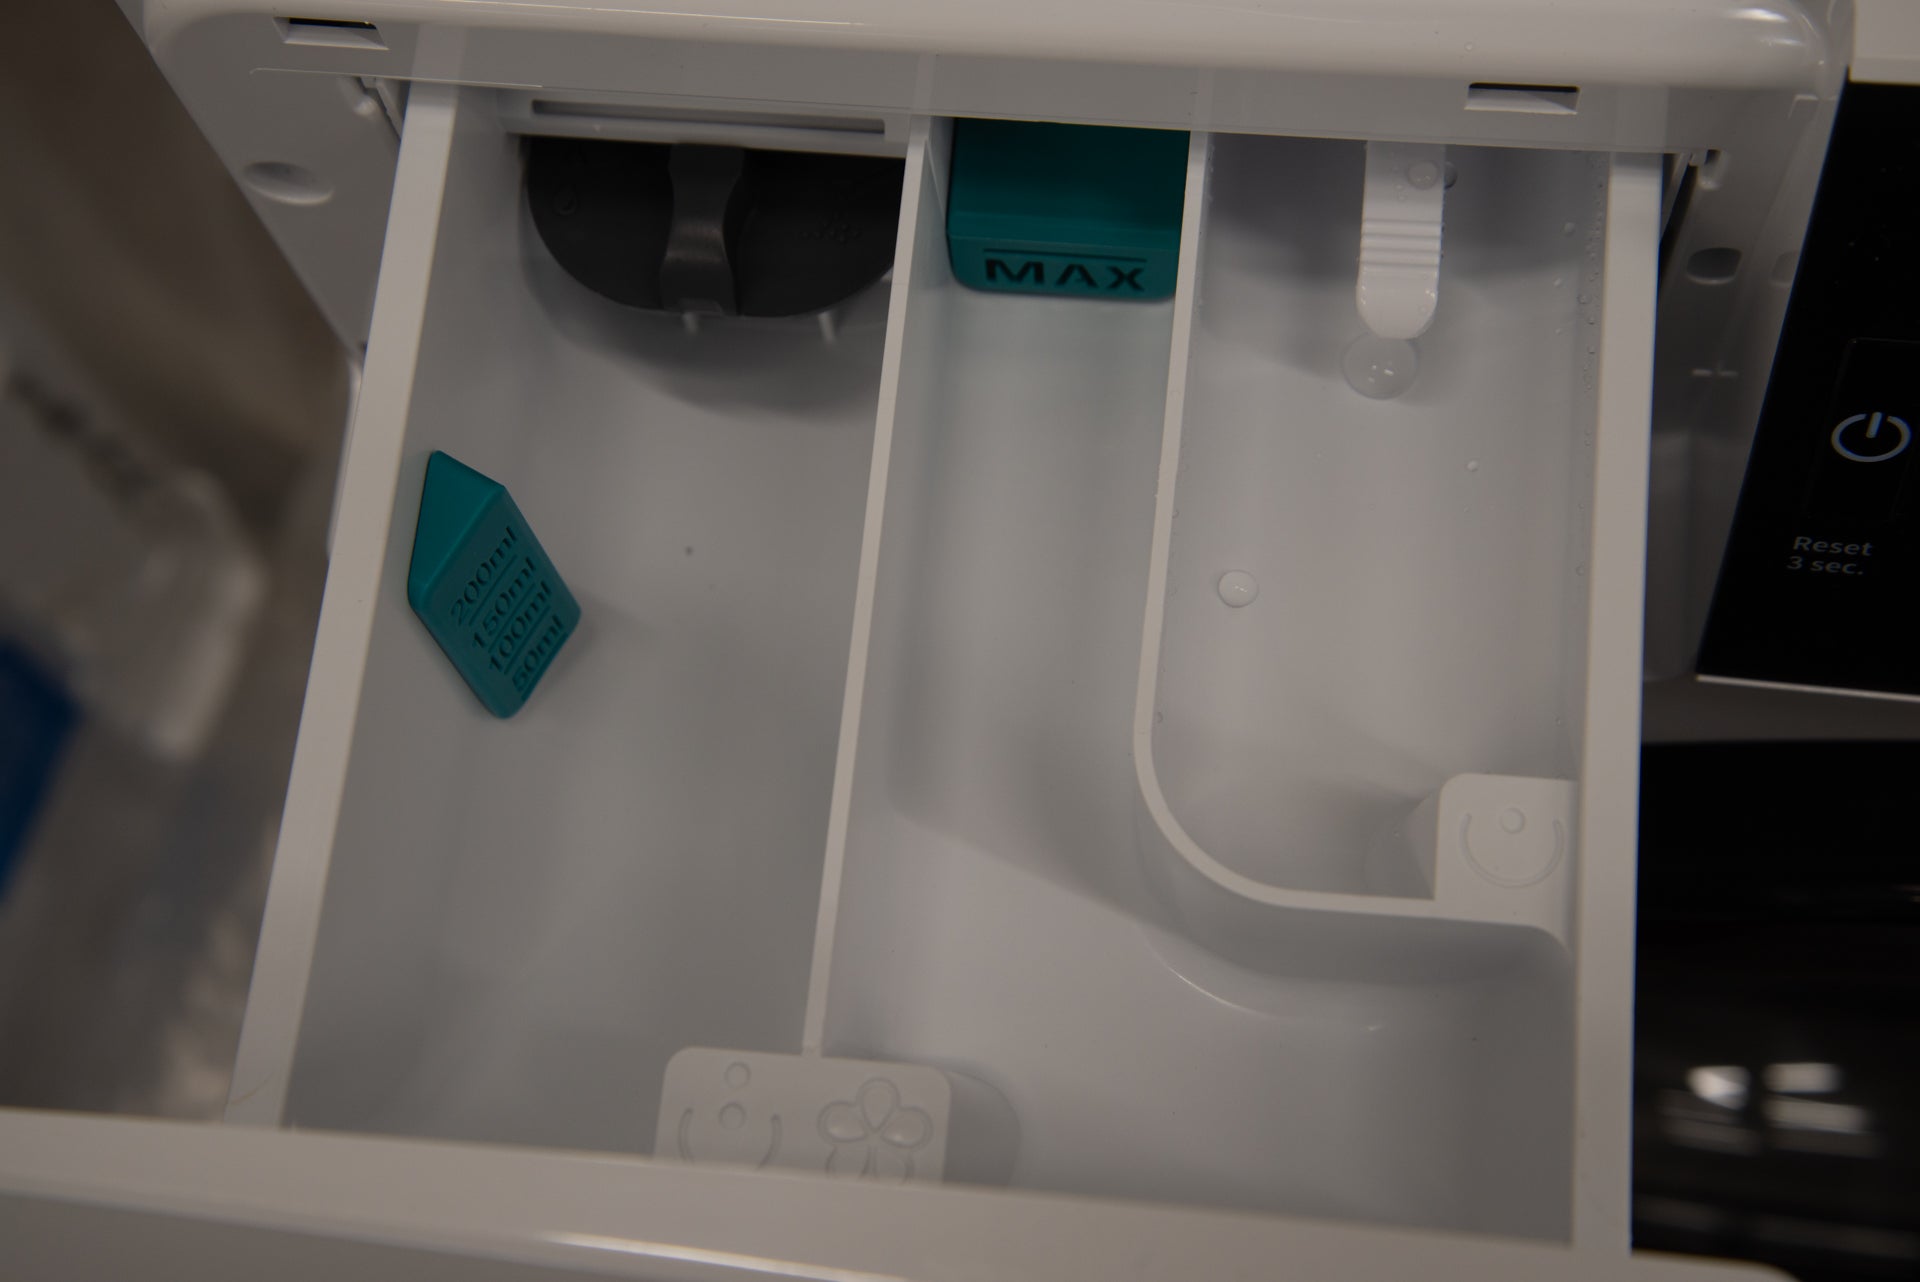 Hisense WFGA90141VM detergent drawer